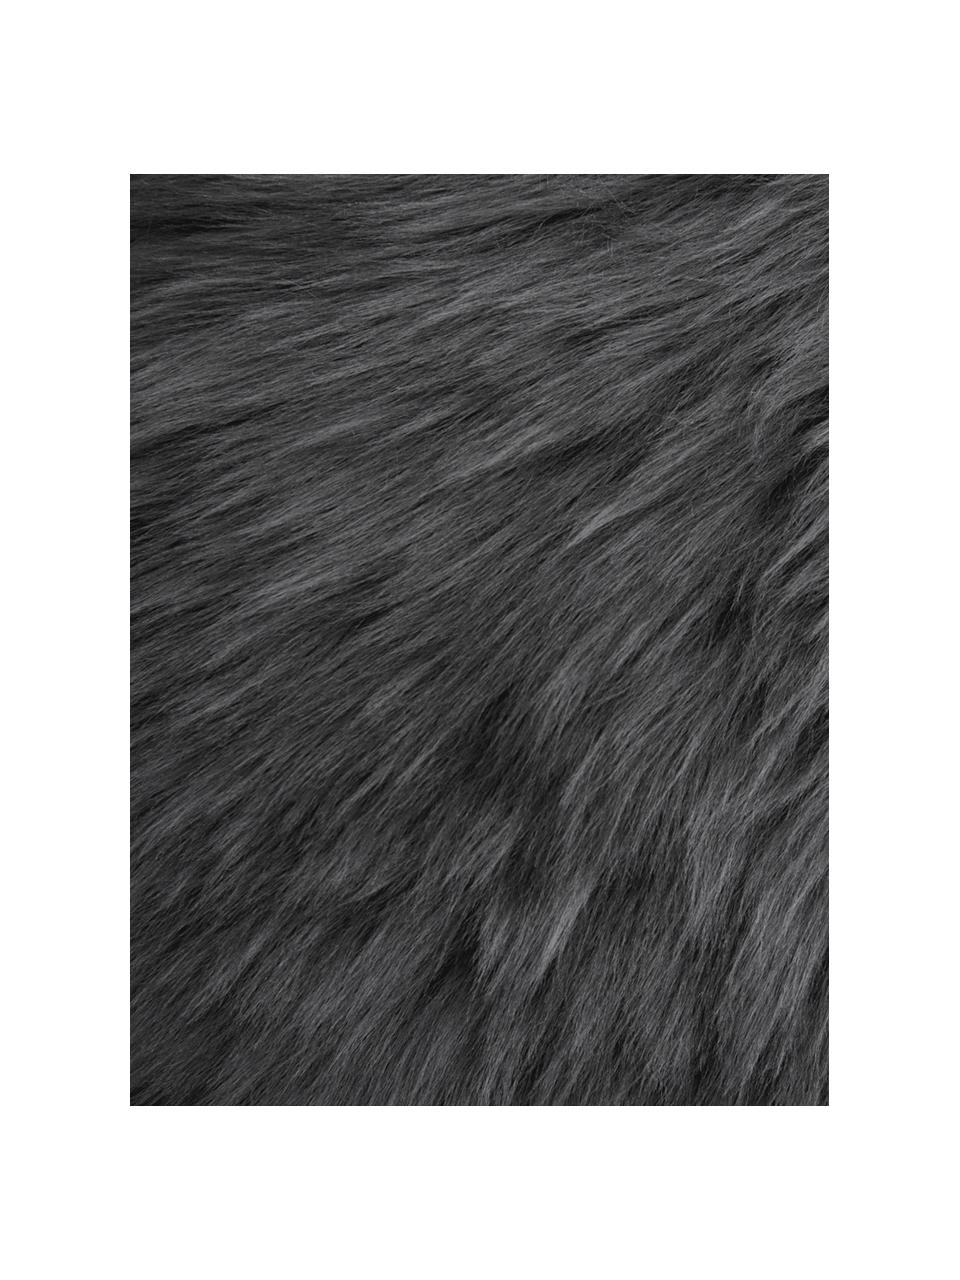 Skóra owcza Oslo, proste włosie, Ciemny szary, S 60 x D 90 cm